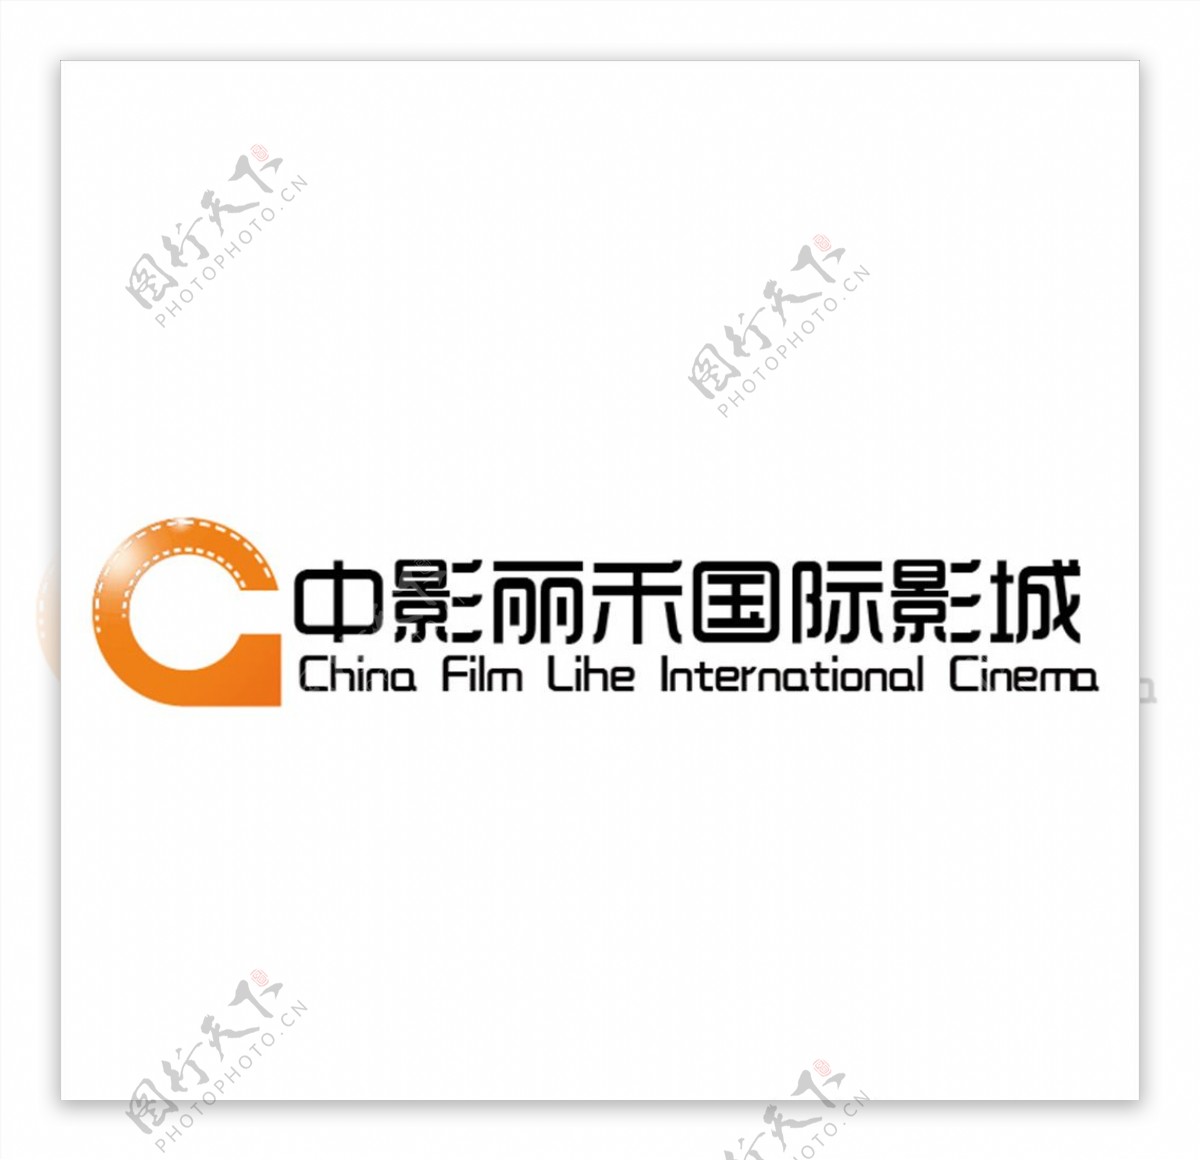 中影丽禾国际影城logo